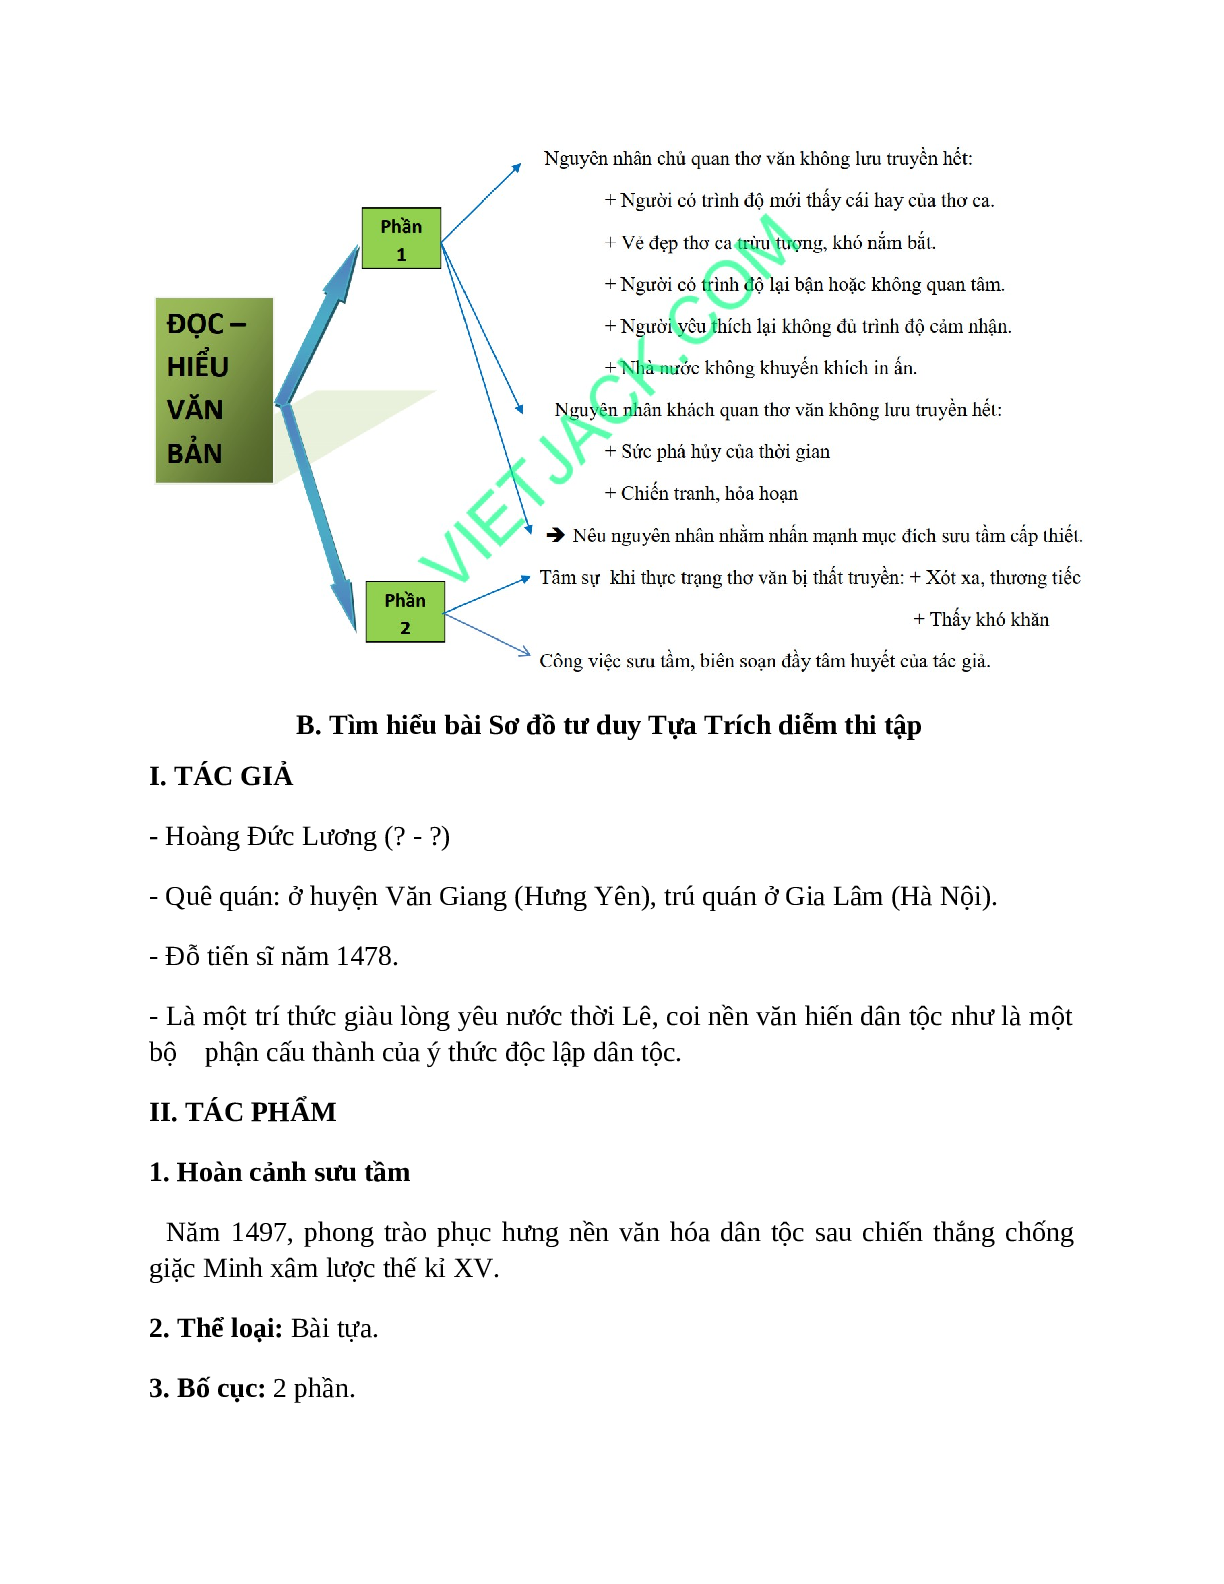 Sơ đồ tư duy bài Tựa Trích diễm thi tập dễ nhớ, ngắn nhất - Ngữ văn lớp 10 (trang 2)